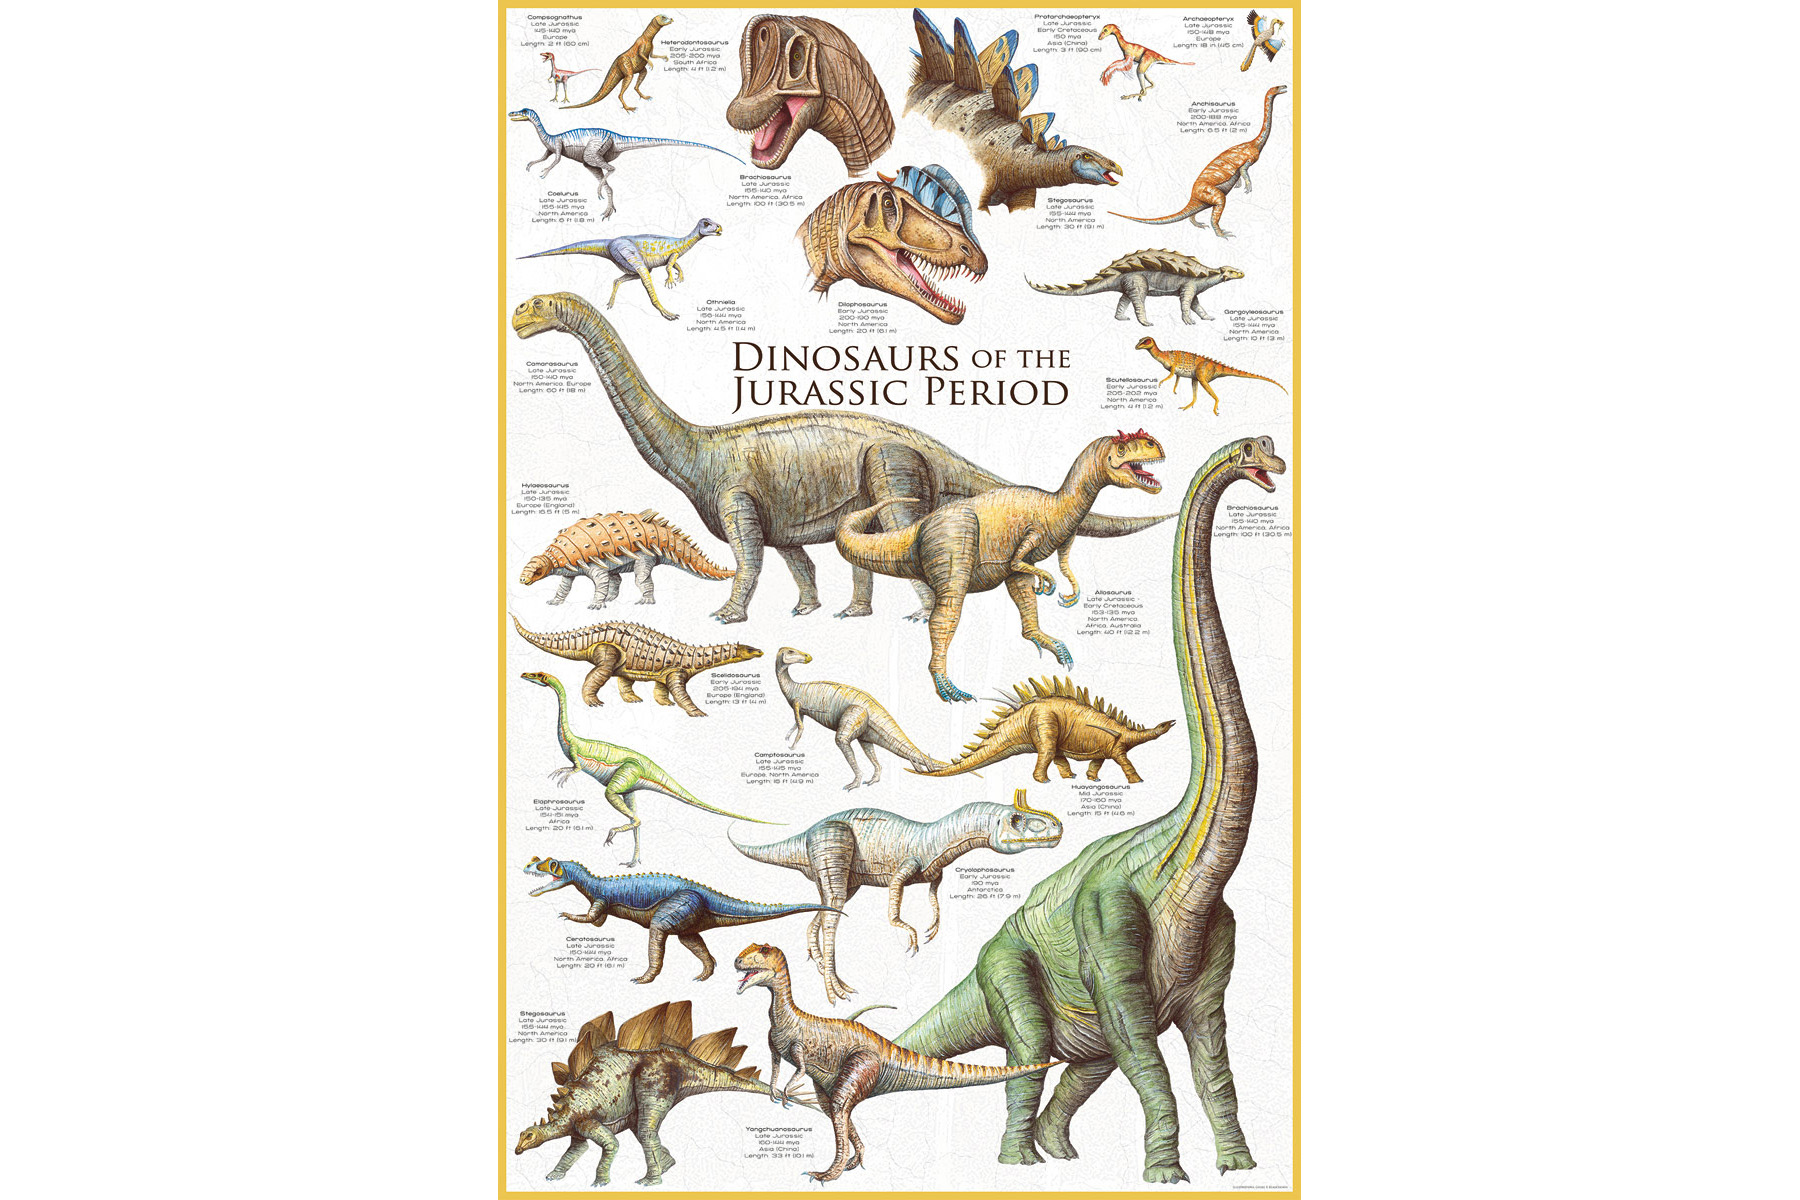 - Dinosaurier Zeit Teile der 1000 Jura Puzzle